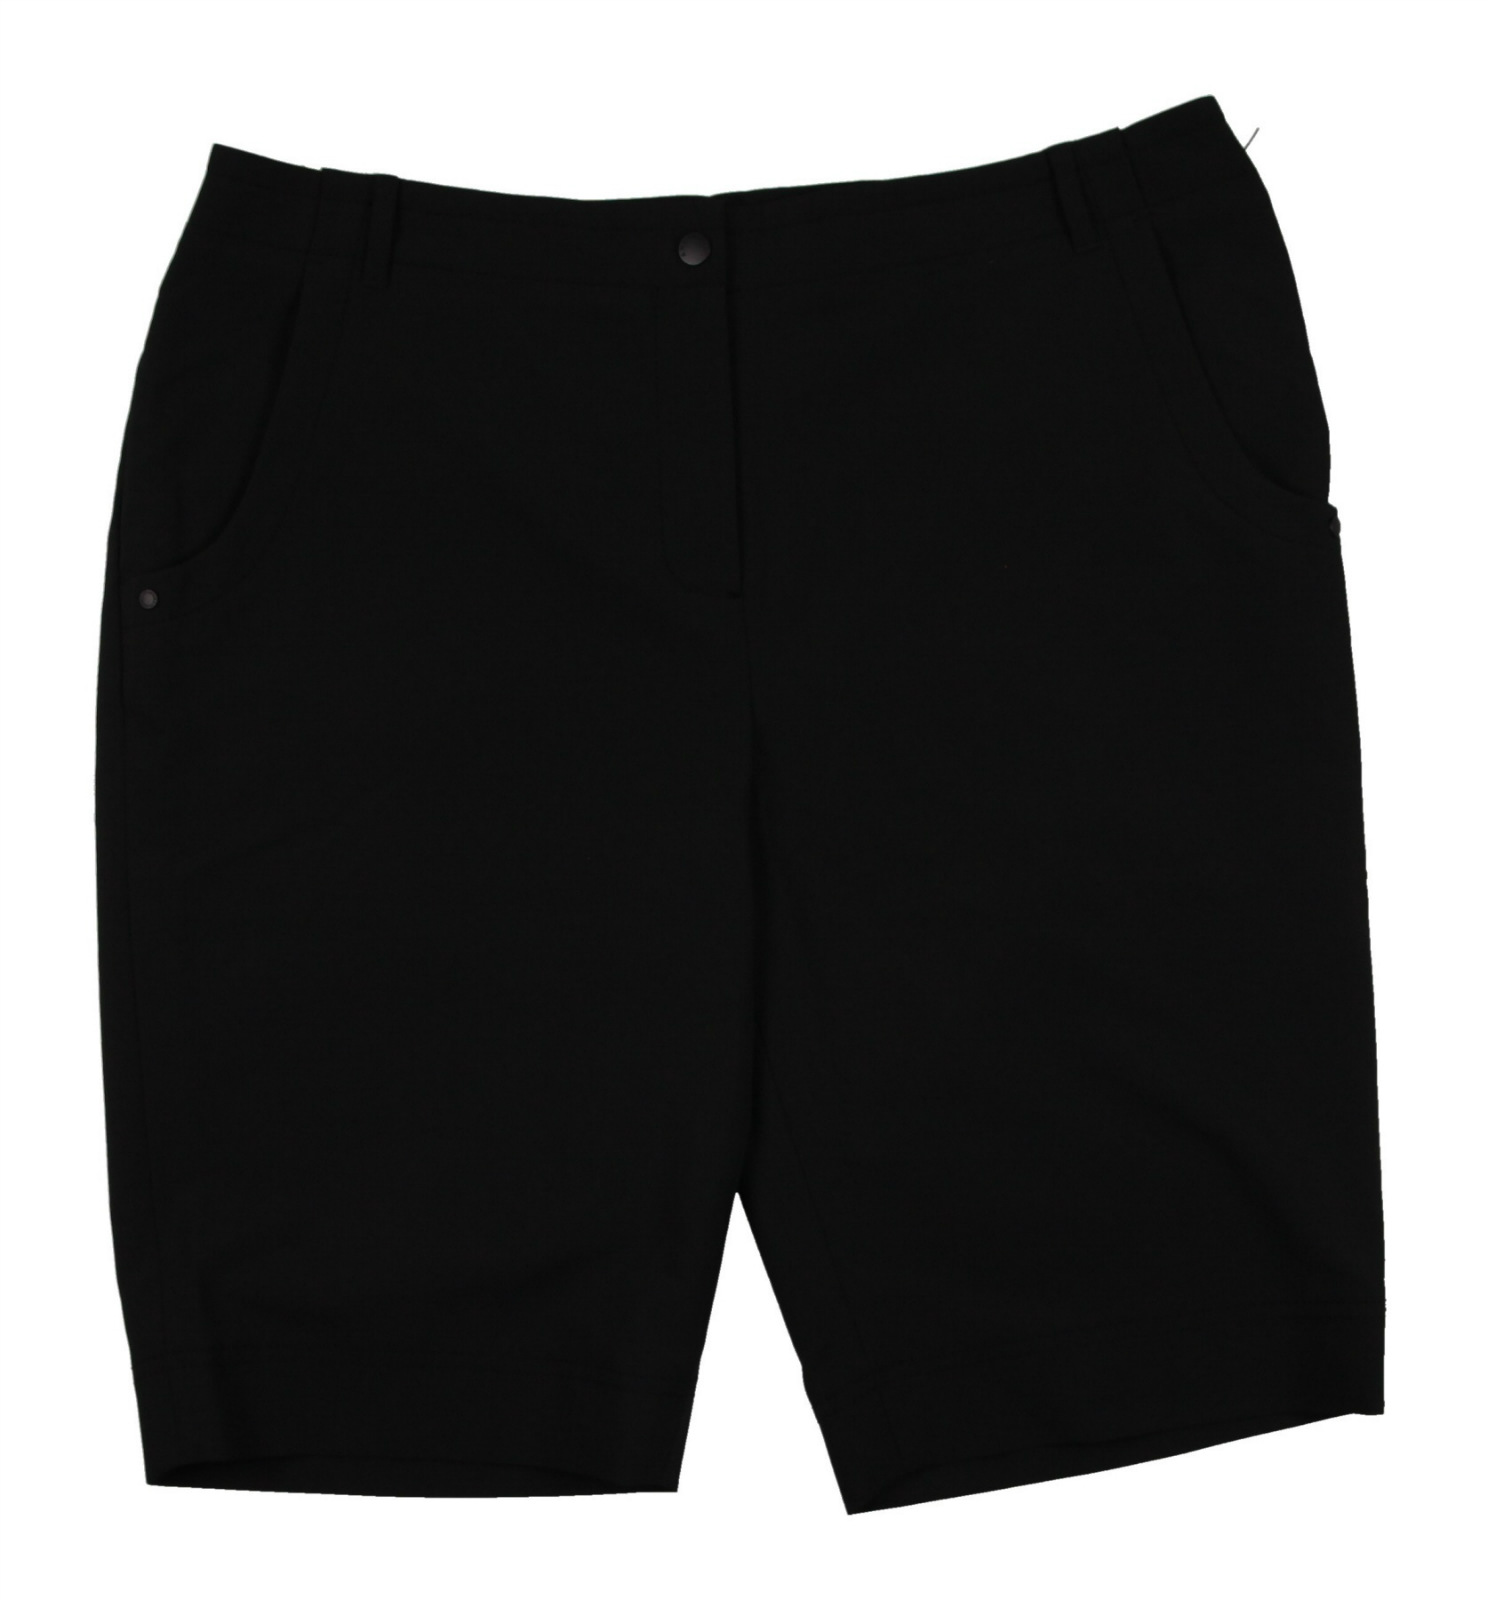 NEW Women'S Cutter Buck Annika Drytech Golf Shorts Black Size 14 | eBay